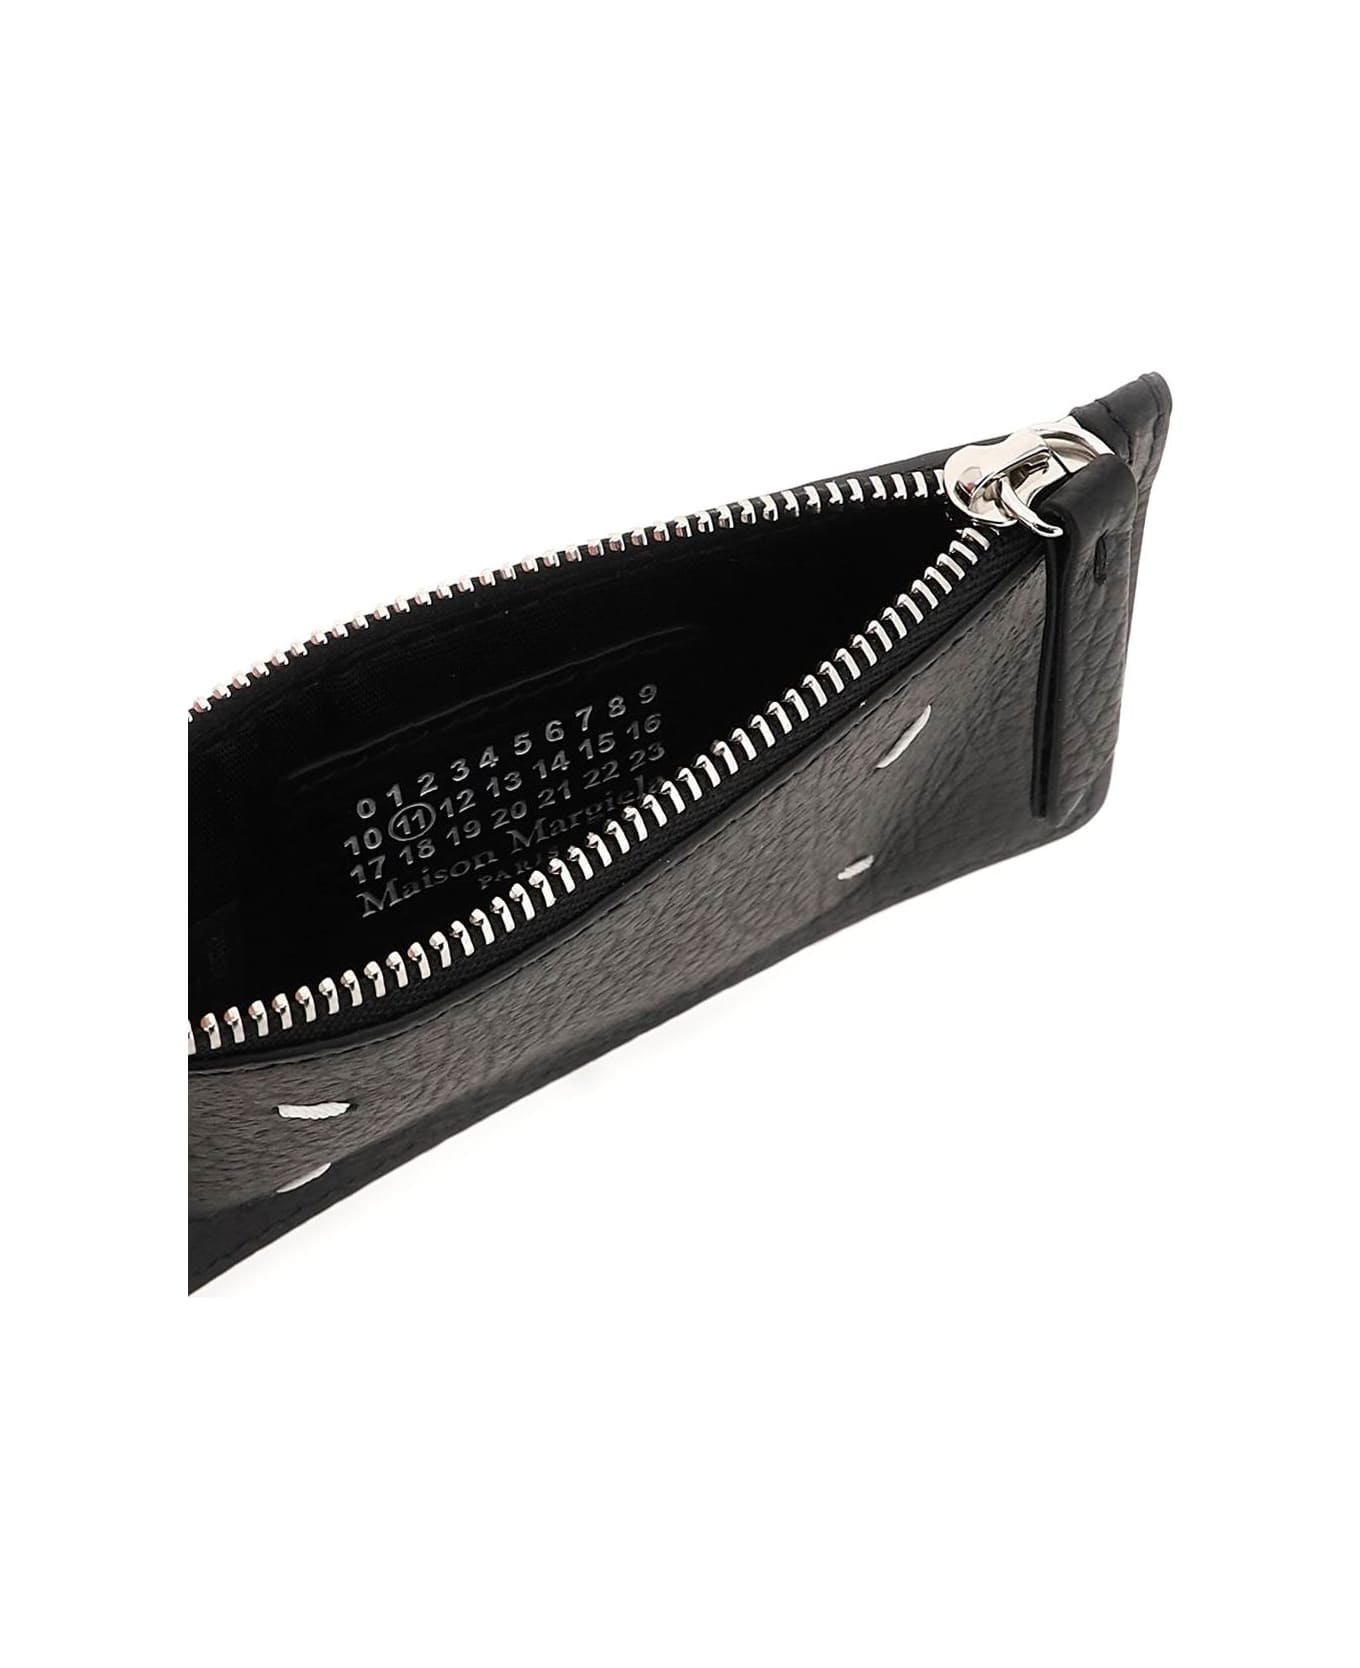 Maison Margiela Leather Zipped Cardholder - Black